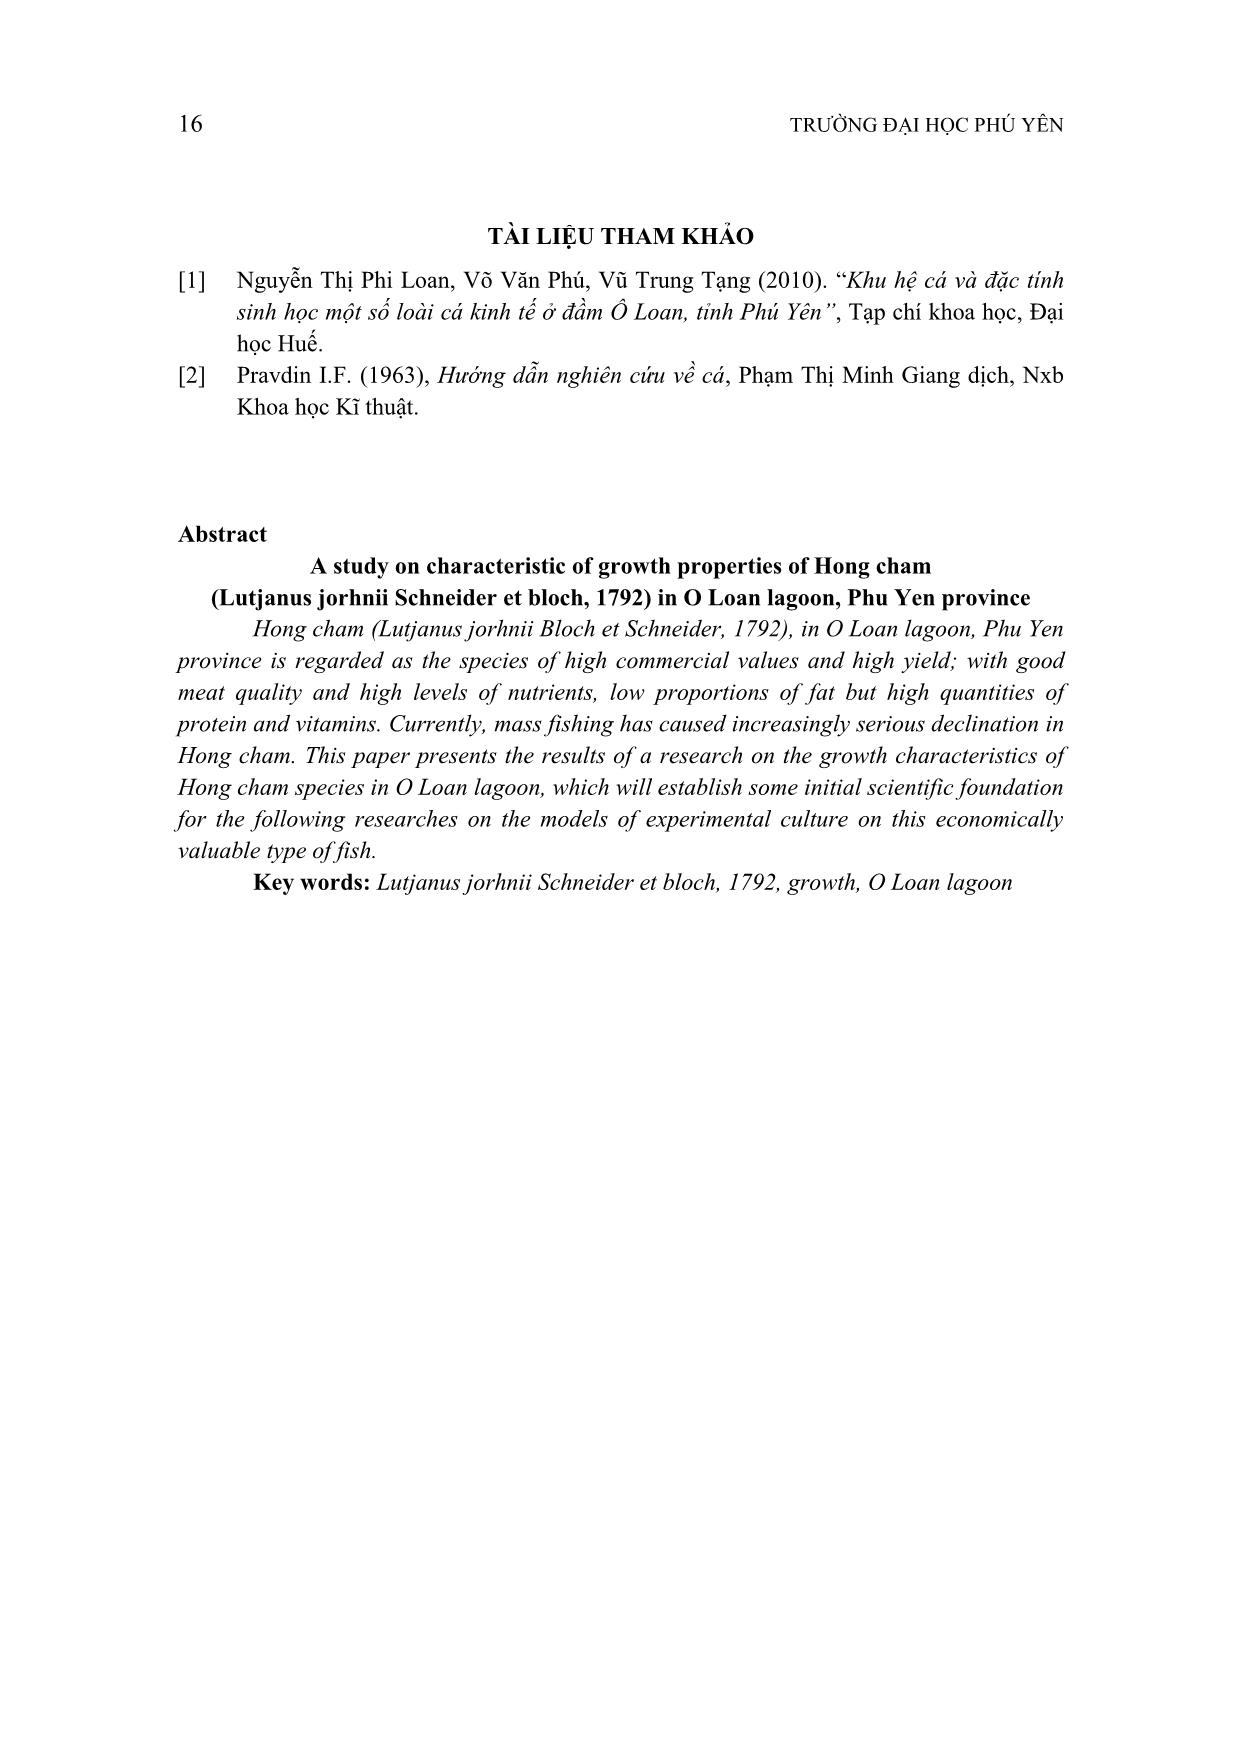 Nghiên cứu đặc tính sinh trưởng của cá hồng chấm (lutjanus jorhnii bloch et schneider, 1792) ở đầm Ô loan, tỉnh Phú Yên trang 7